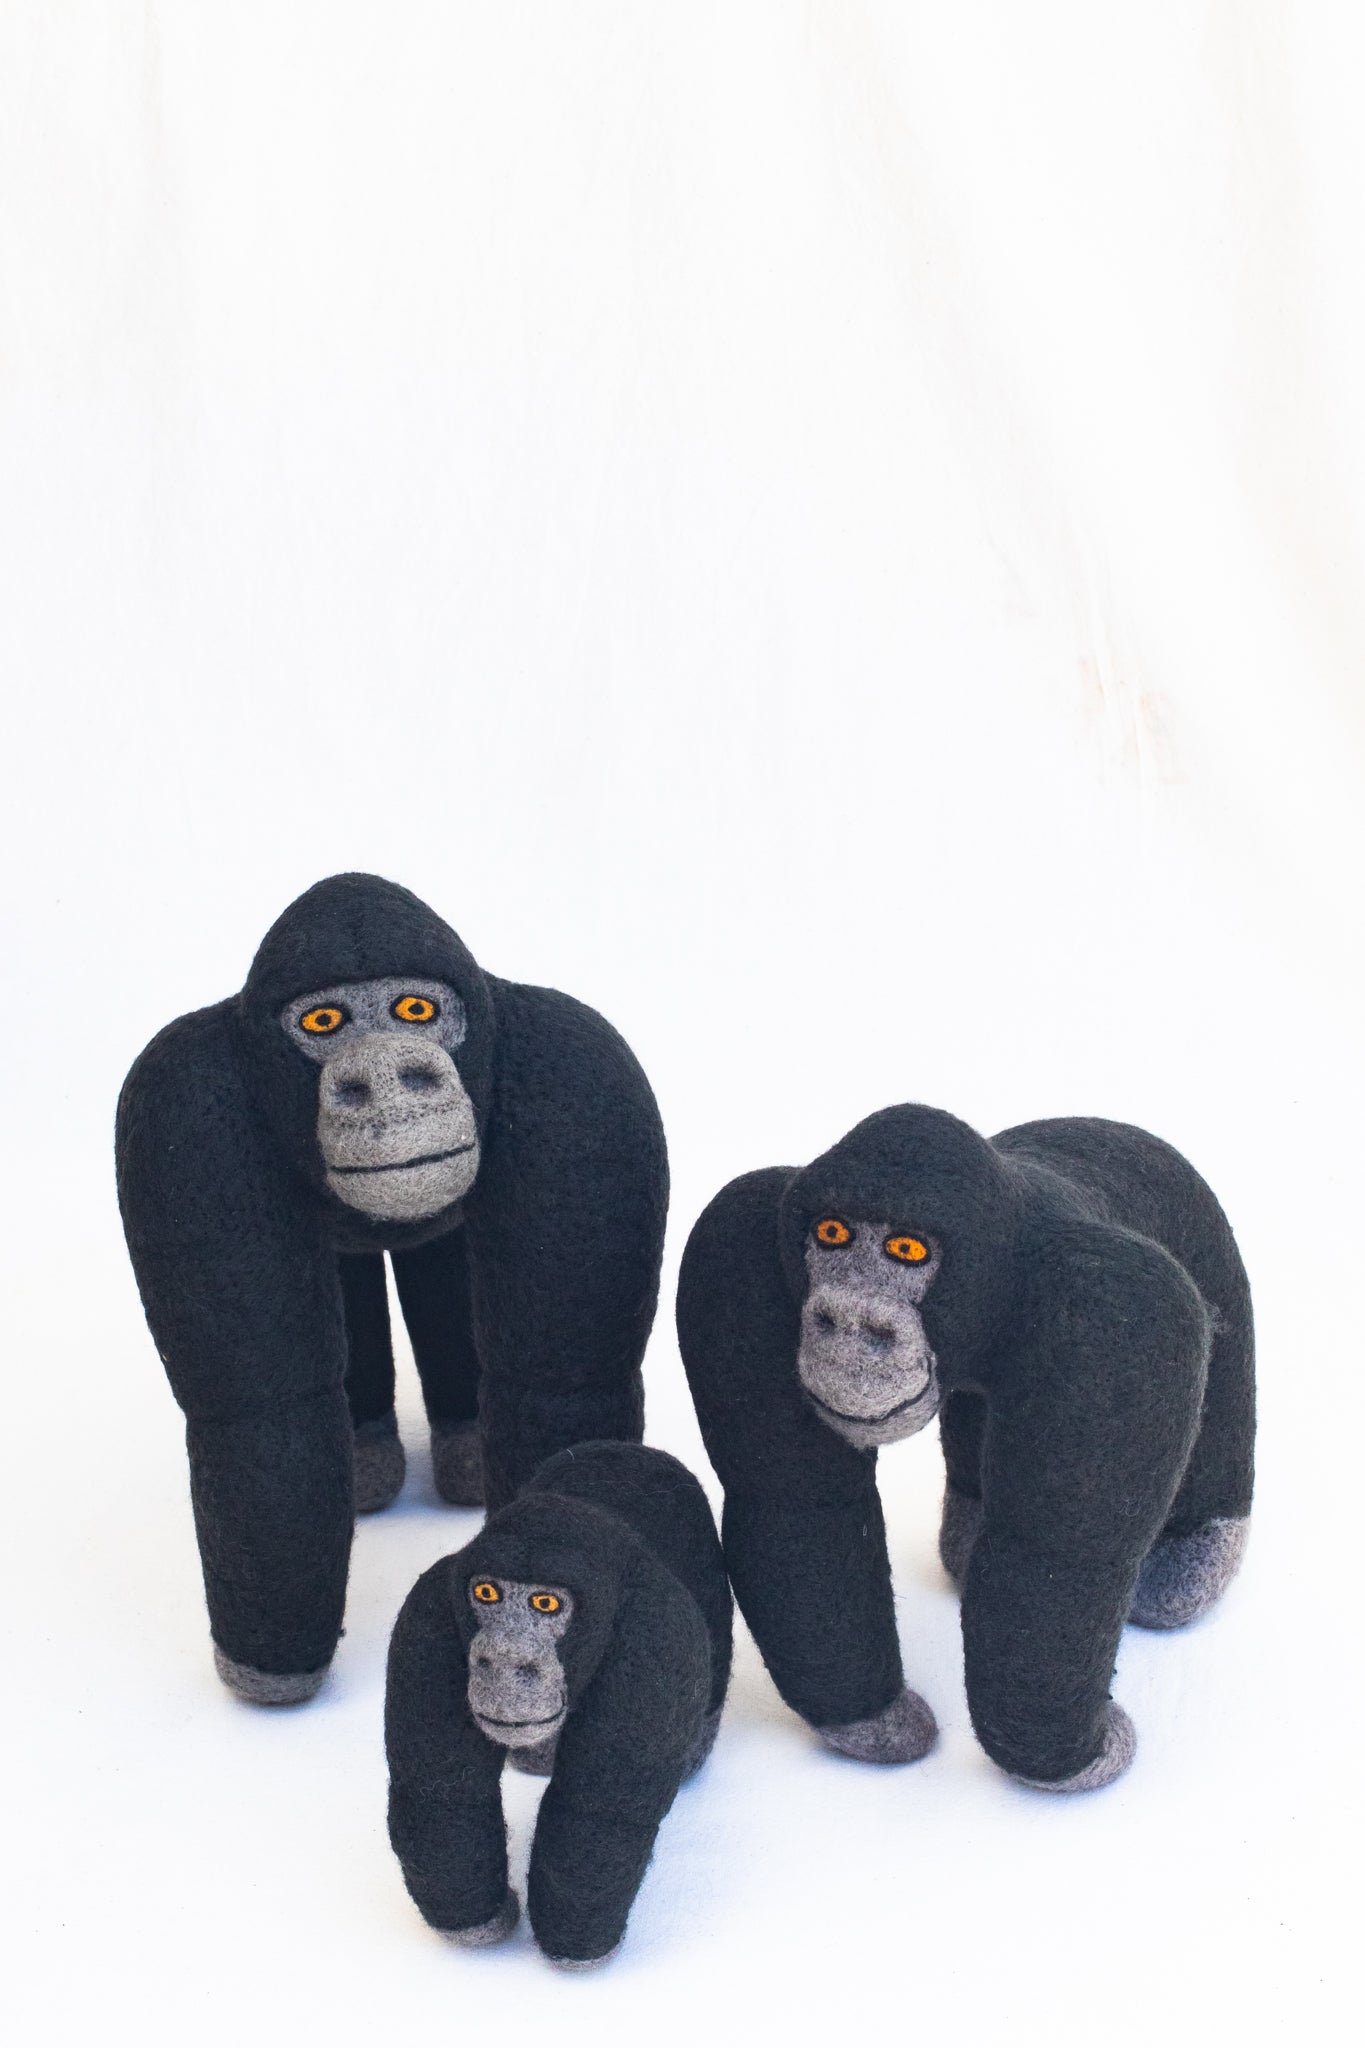 Mountain Gorilla Family